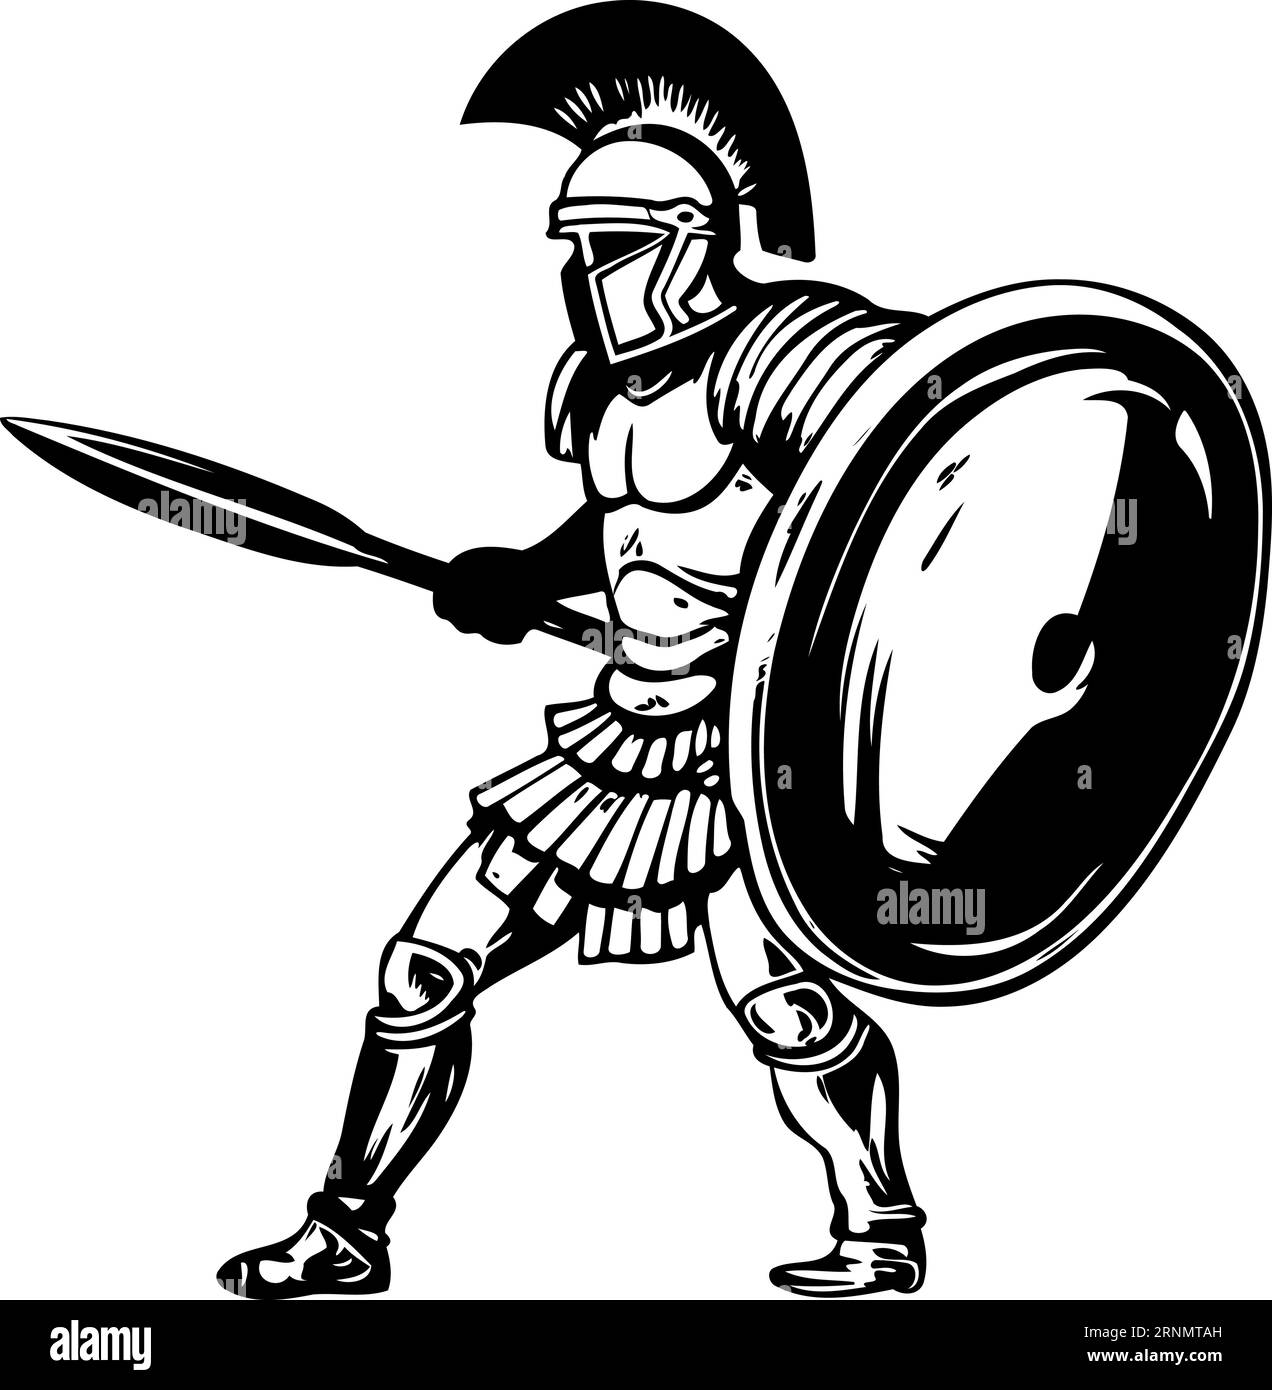 ancien soldat romain illustration vectorielle minimaliste noir et blanc Illustration de Vecteur